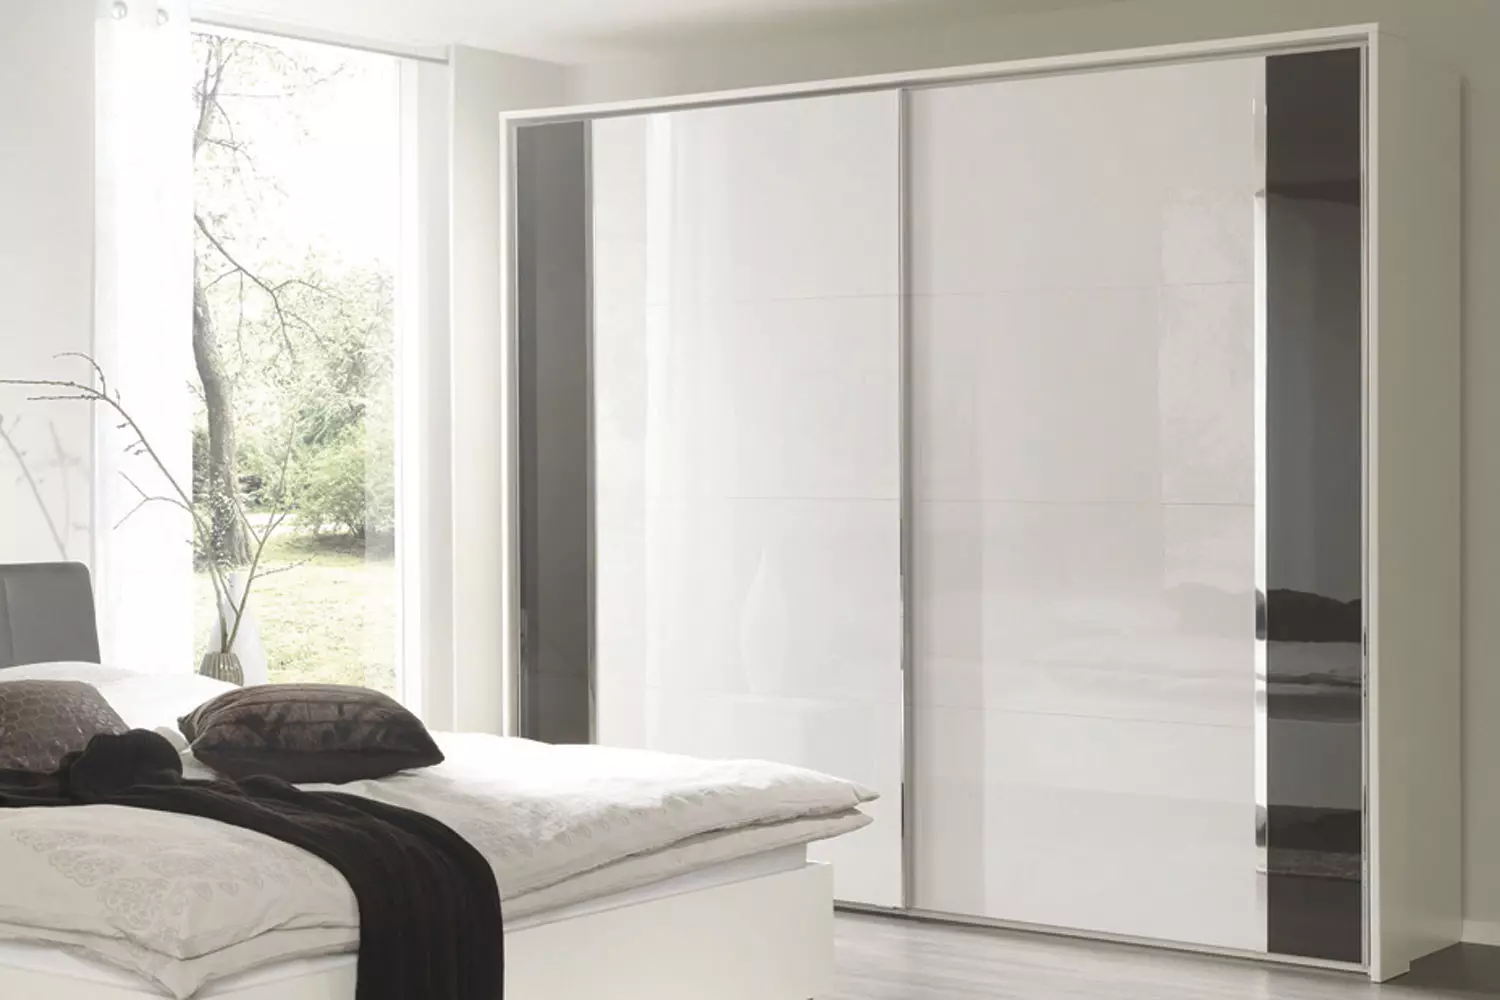 ארונות בגדים לבנים בחדר השינה (49 תמונות): תכונות של מודלים מודרניים בצבעים בהירים עם מראה, אפשרויות עיצוב עבור ארונות מאט שחור ולבן עם מבריק 9922_4